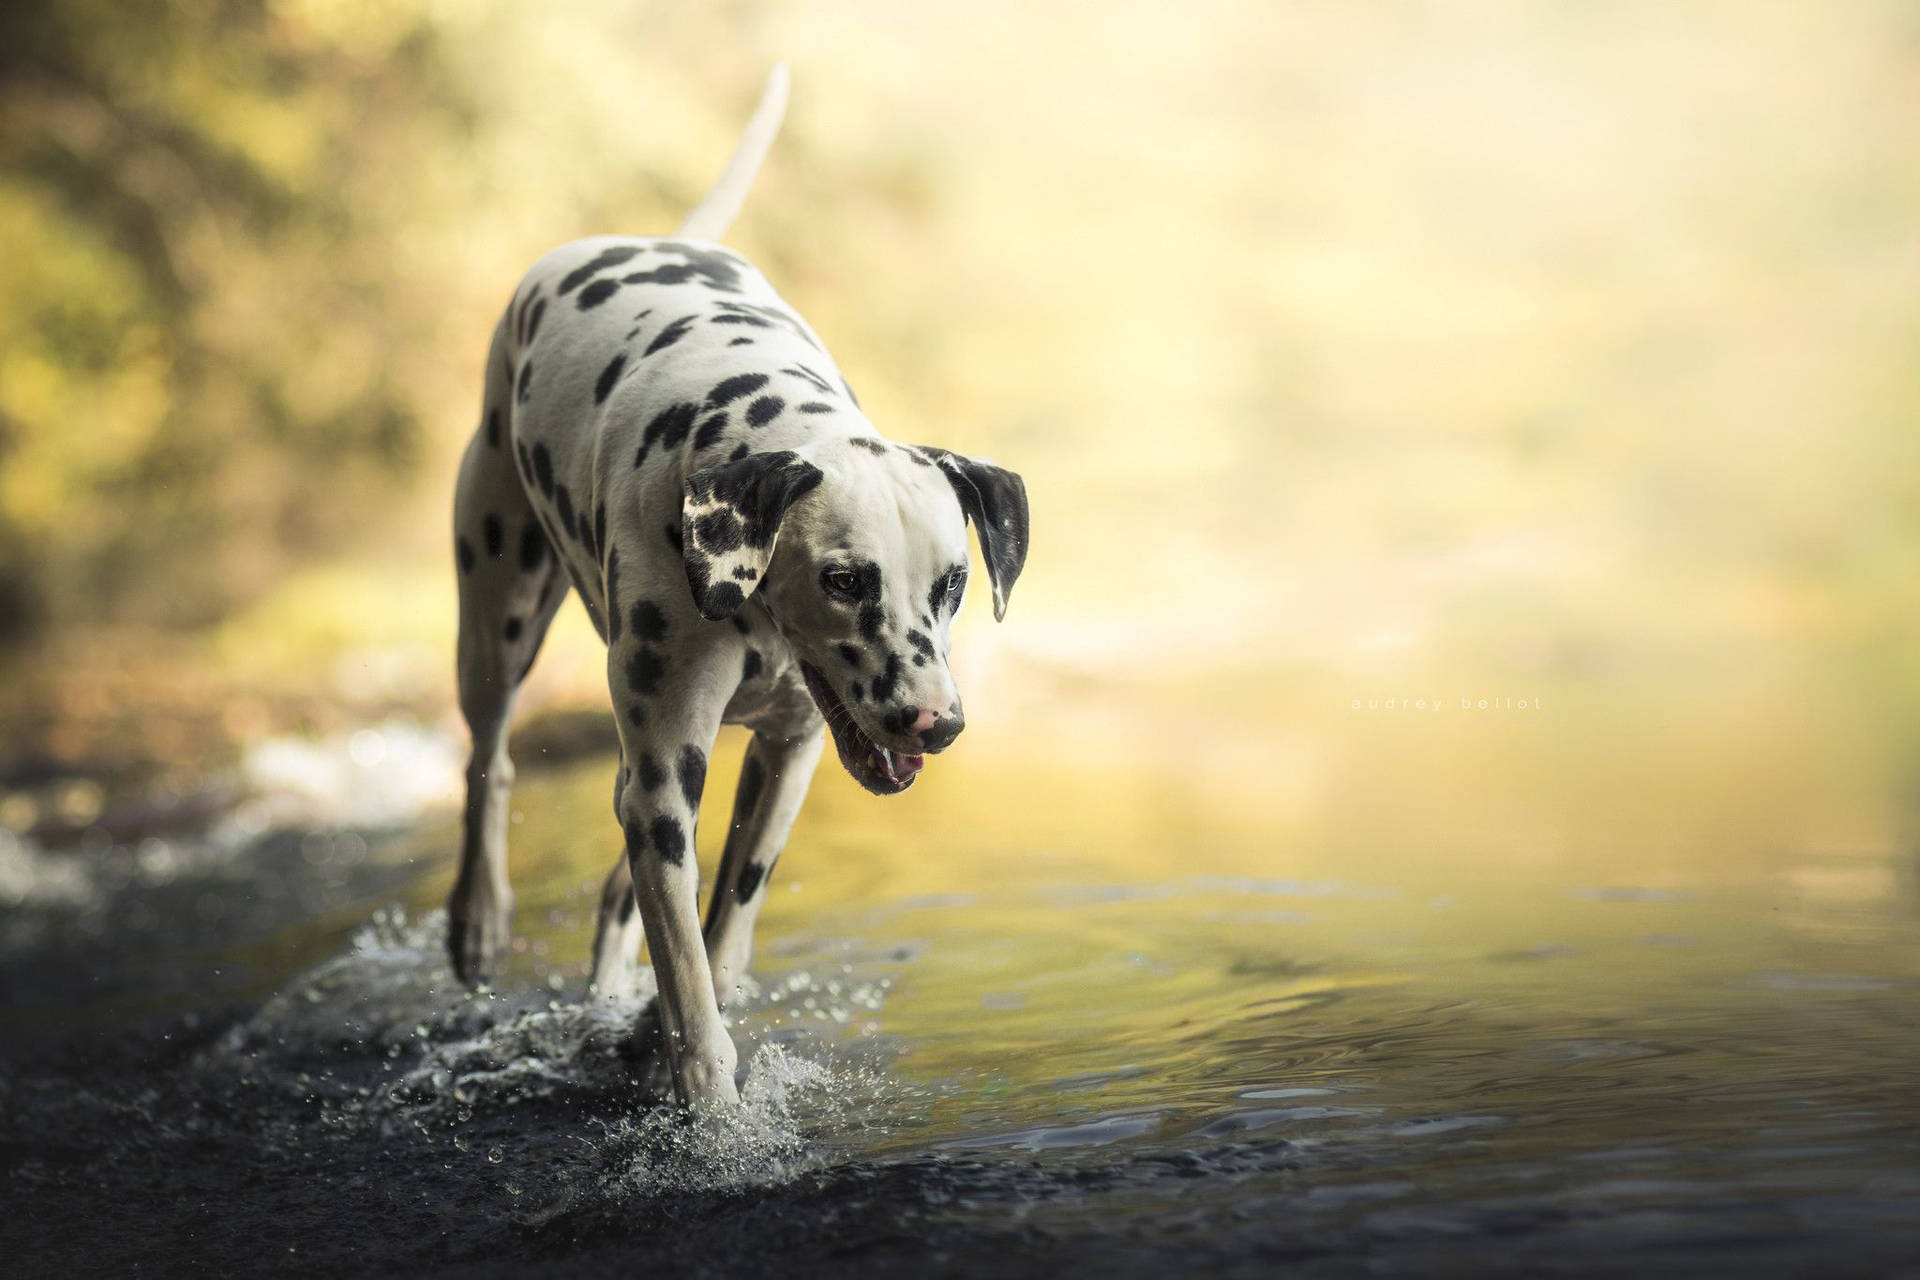 Dalmatian Dog Photo Shot